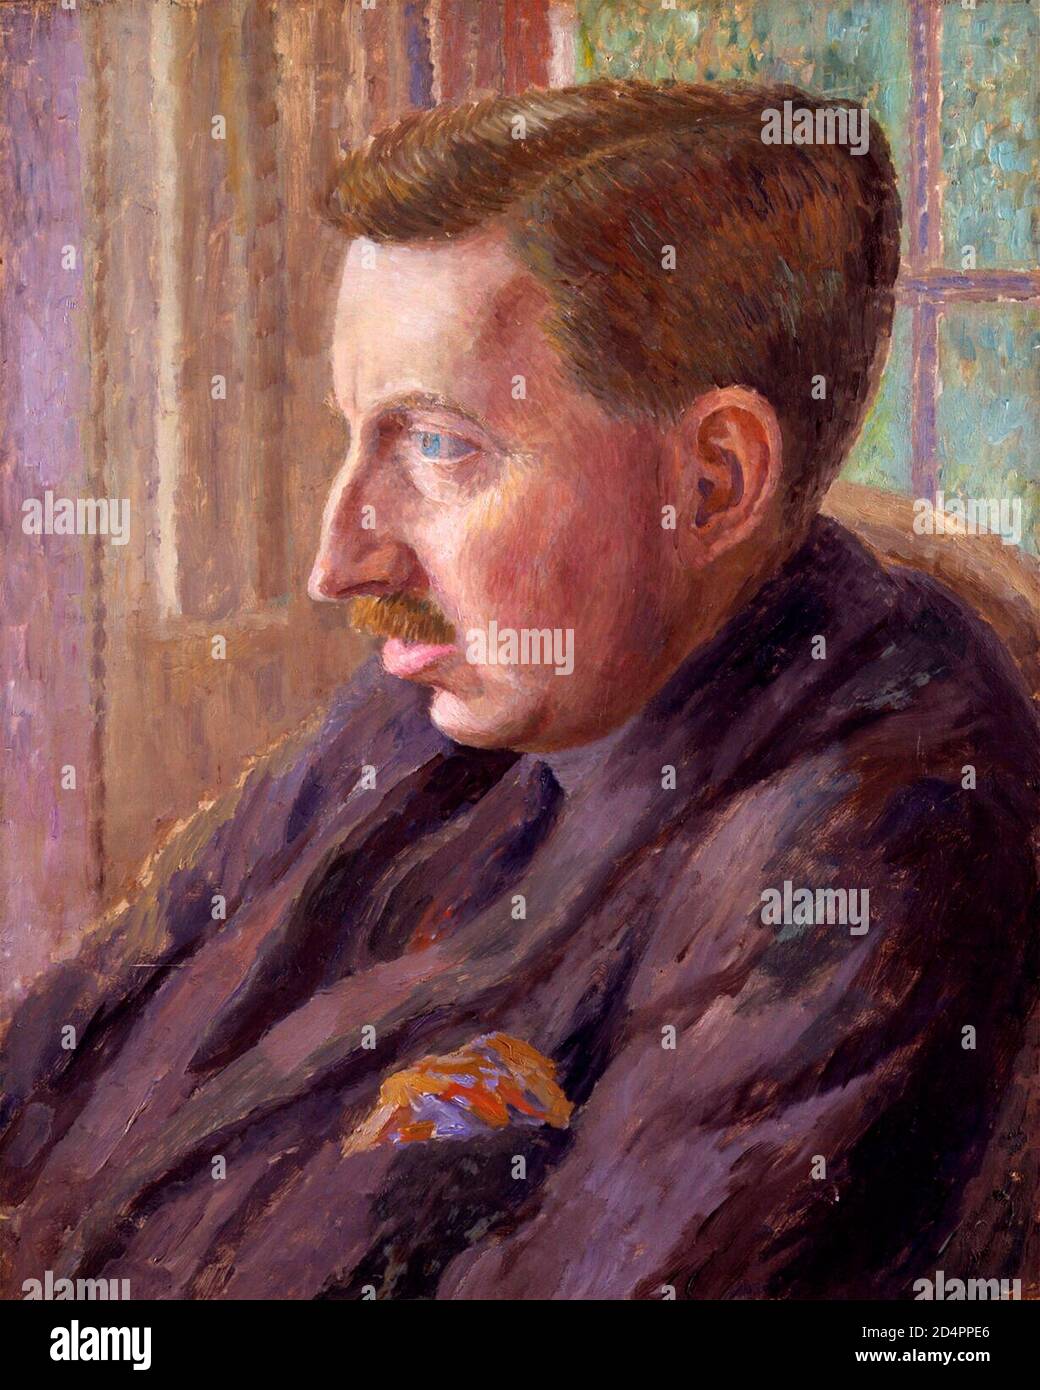 E. M. Forster. Portrait de l'écrivain anglais Edward Morgan Forster (1879-1970) par Dora Carrington, huile sur toile, vers 1924/5 Banque D'Images